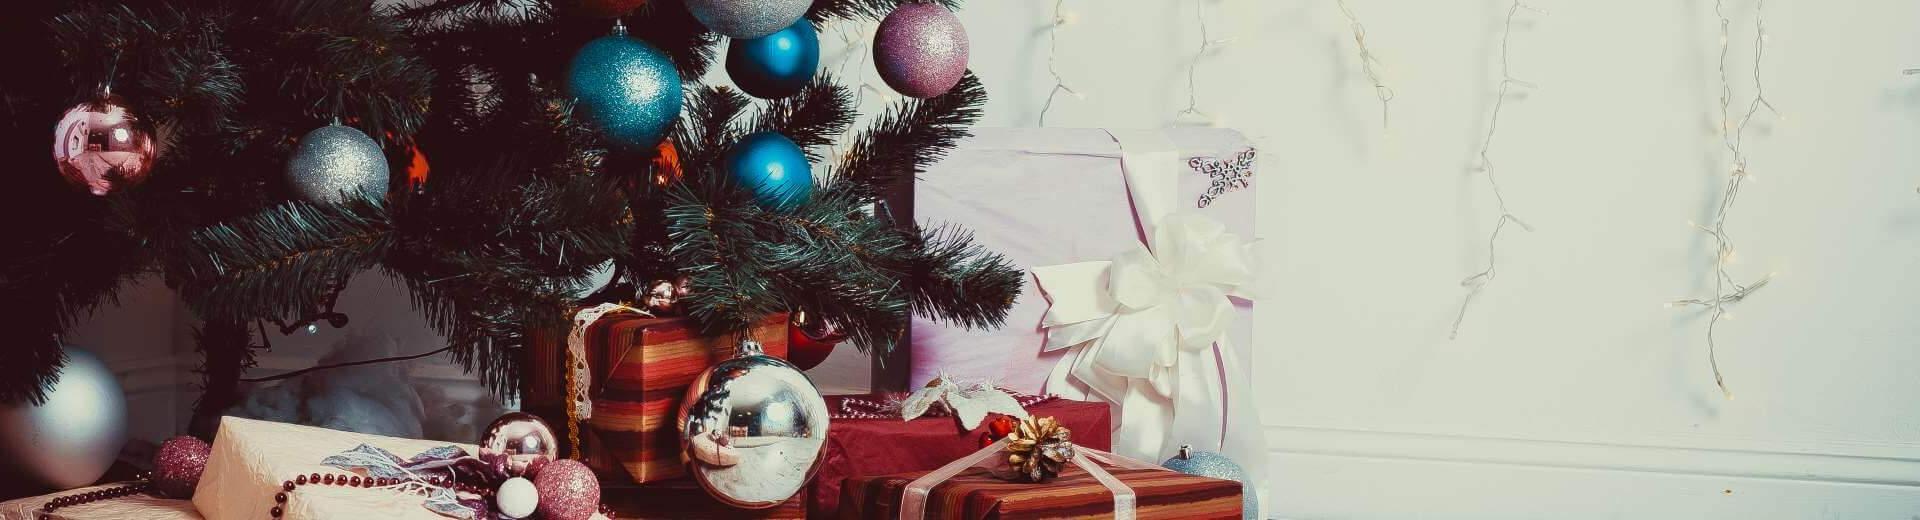 Weihnachten im Ferienhaus in Tschechien | Casamundo - Casamundo